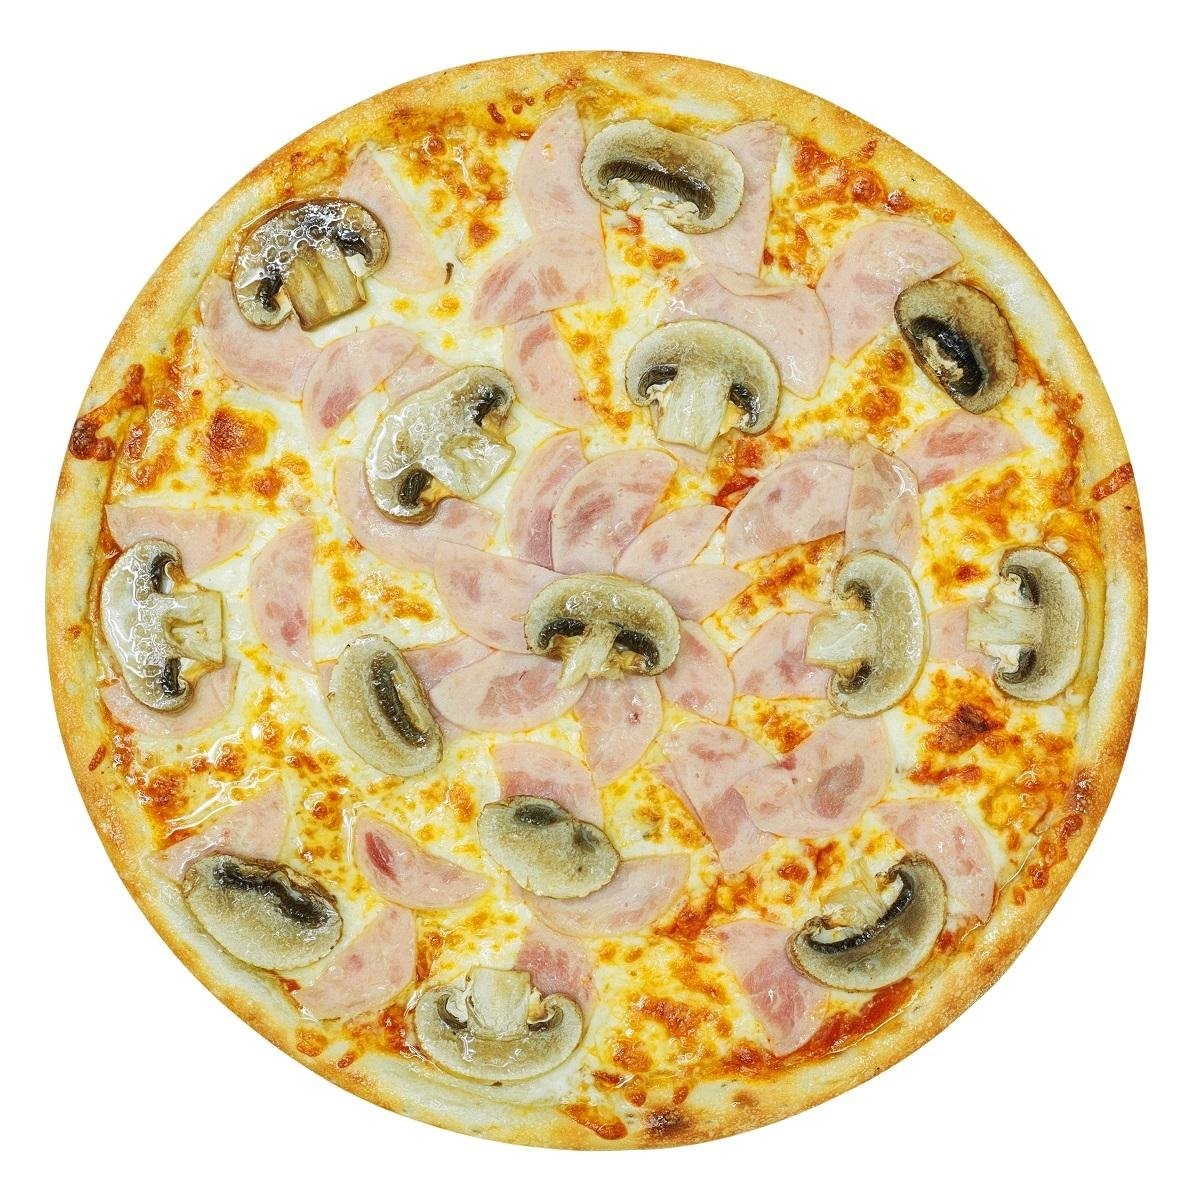 сочи лучшая пицца с доставкой фото 91